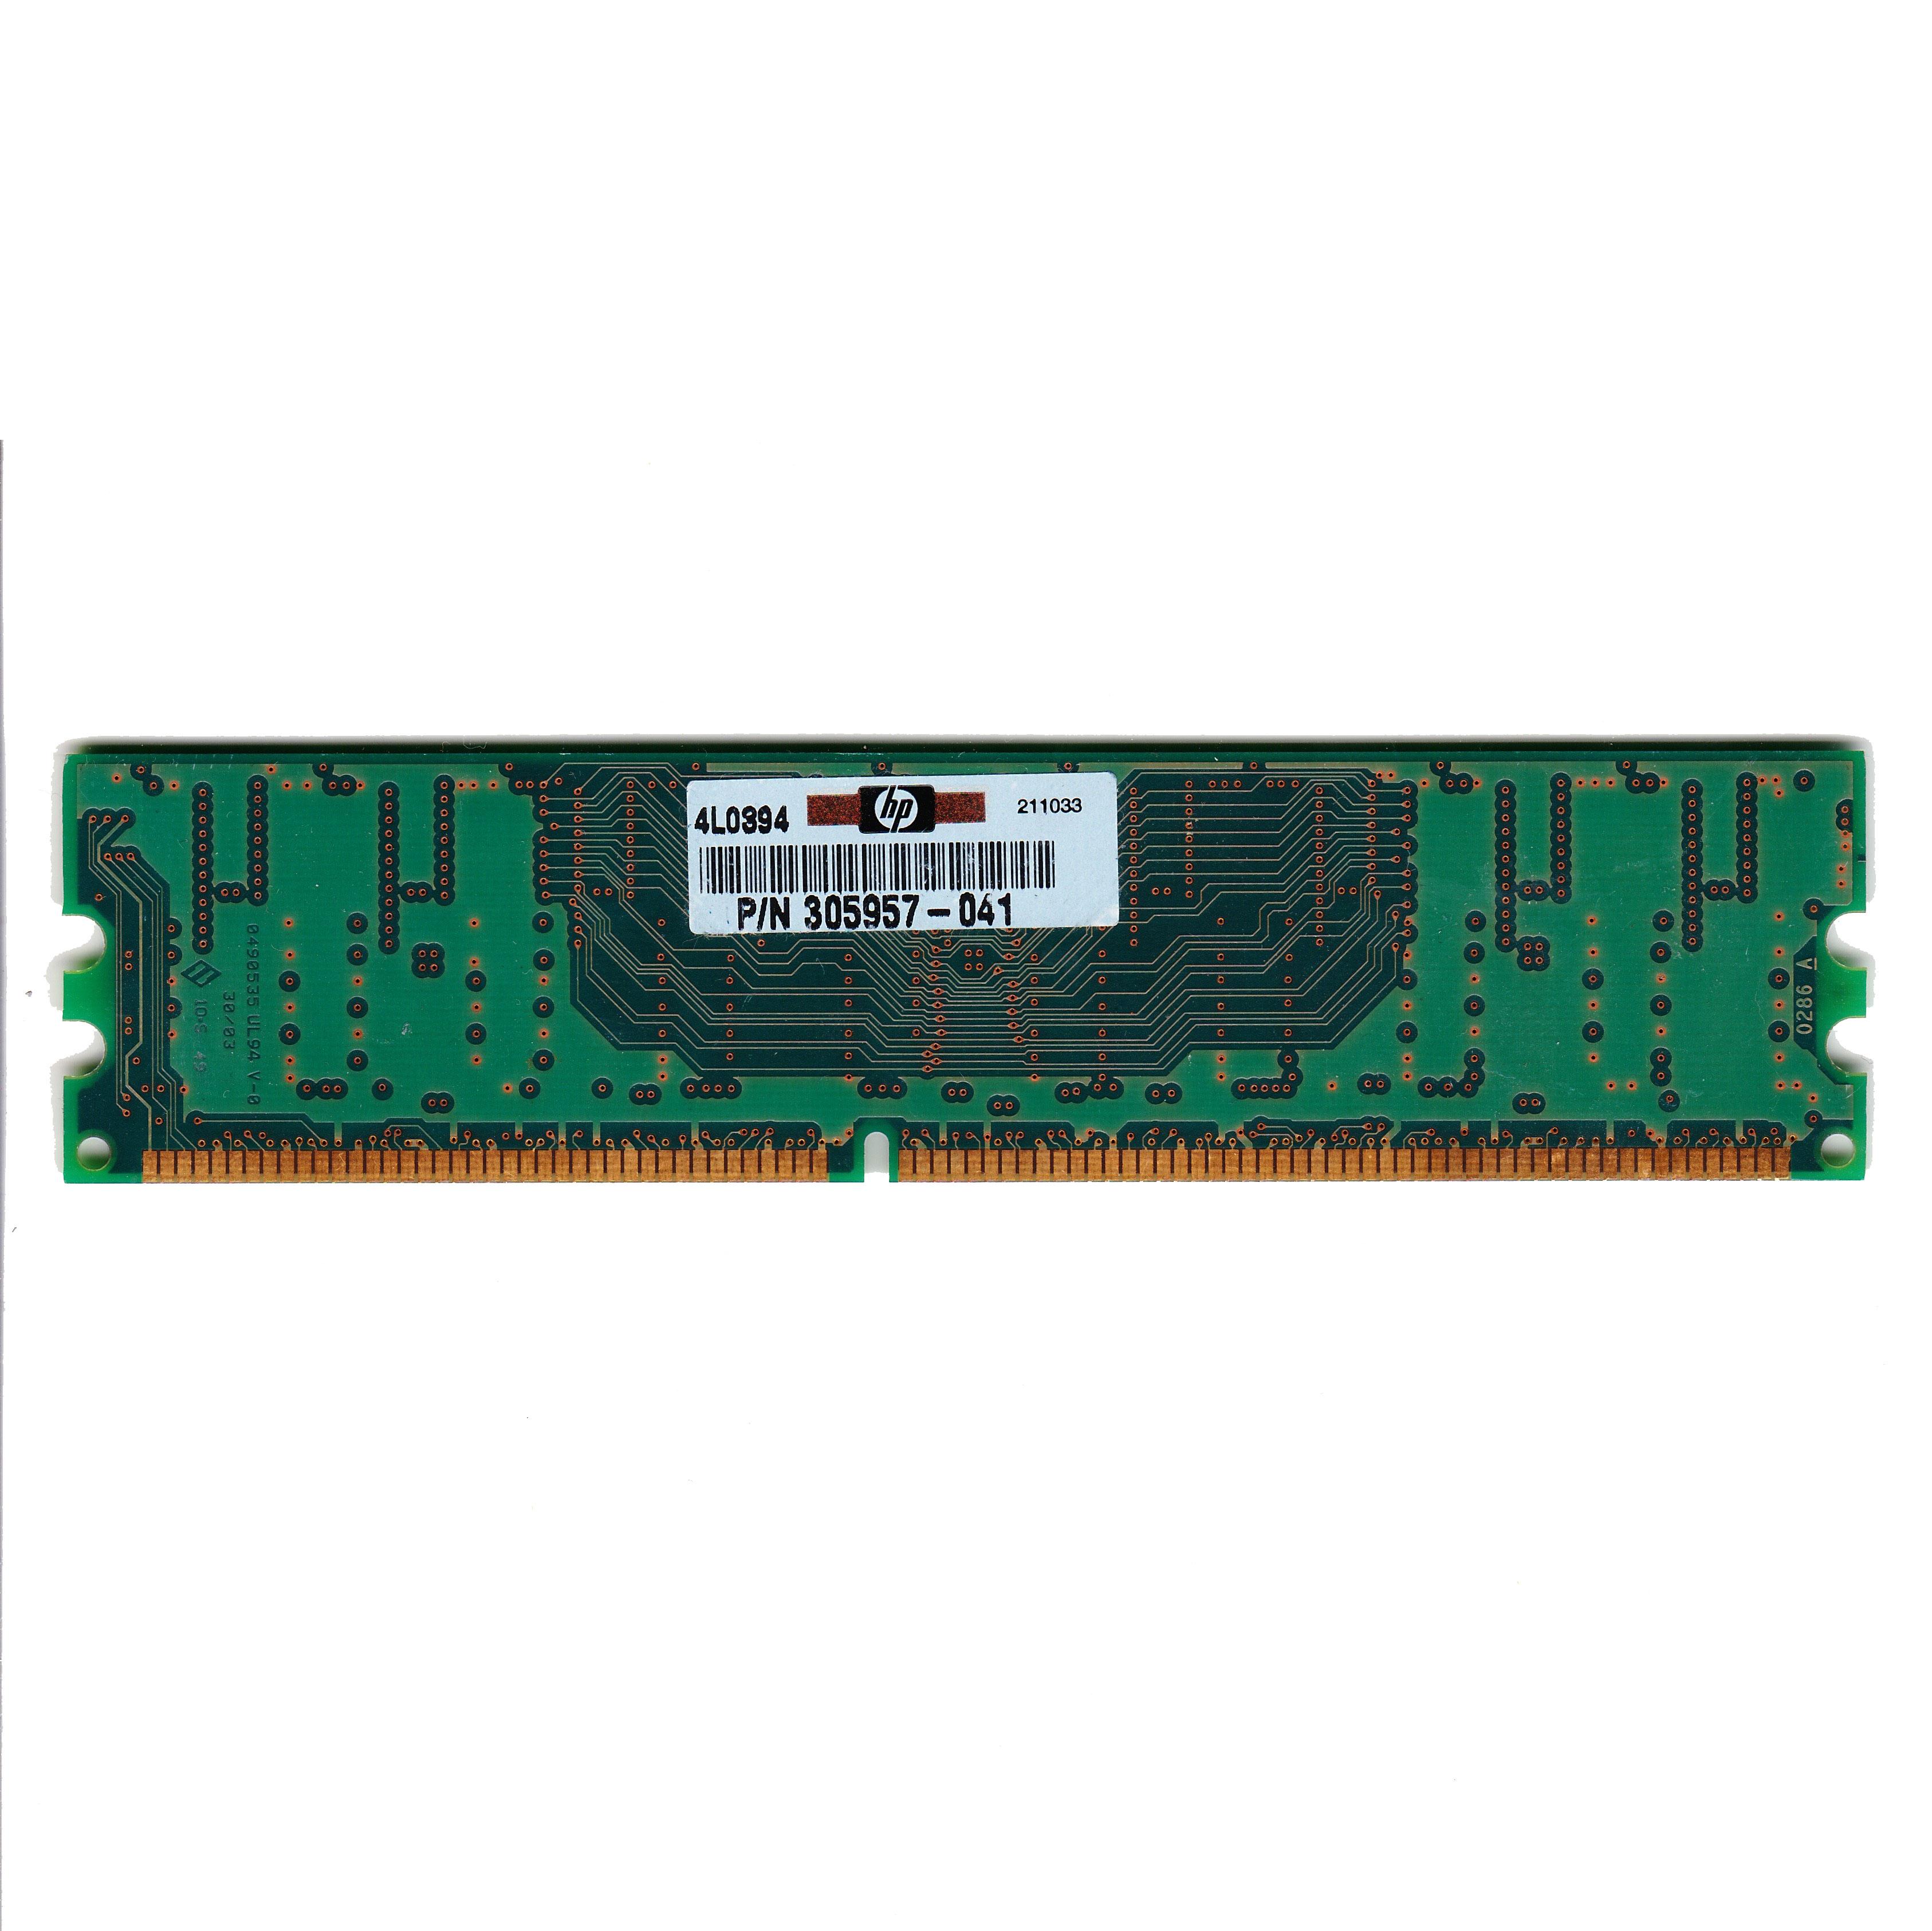 Untested Crucial 256MB DDR 333 CL2.5 RAM PC2700U